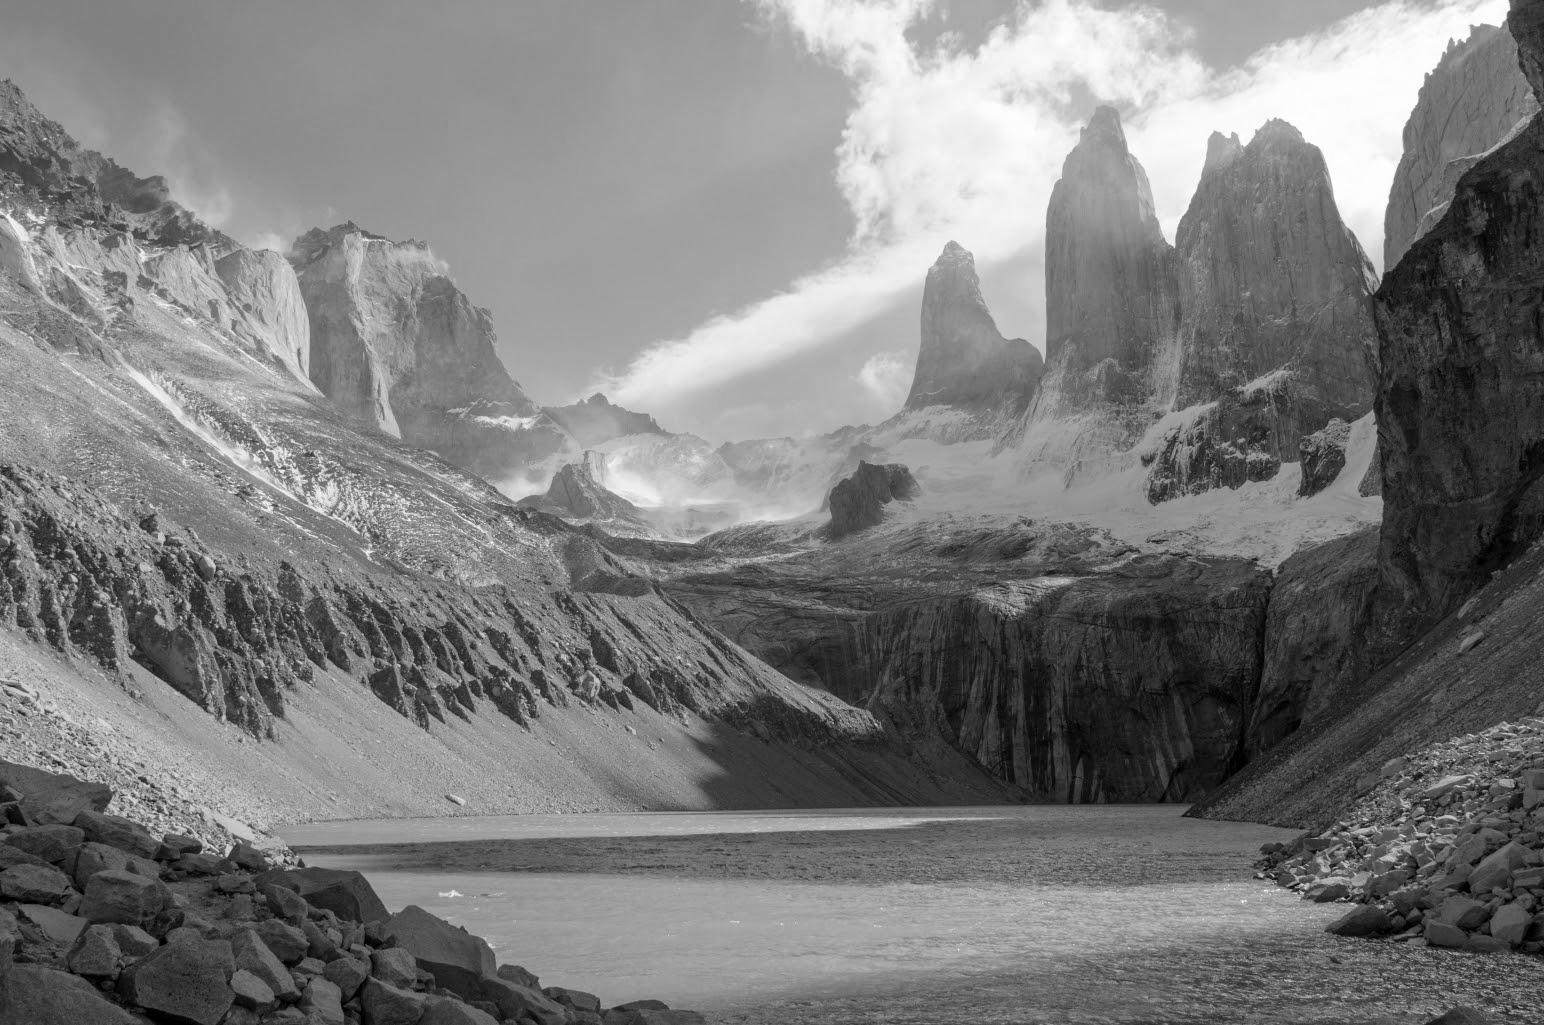 Argentyna i Chile otwarte dla turystów. Zapraszam do Patagonii w lutym 2022!